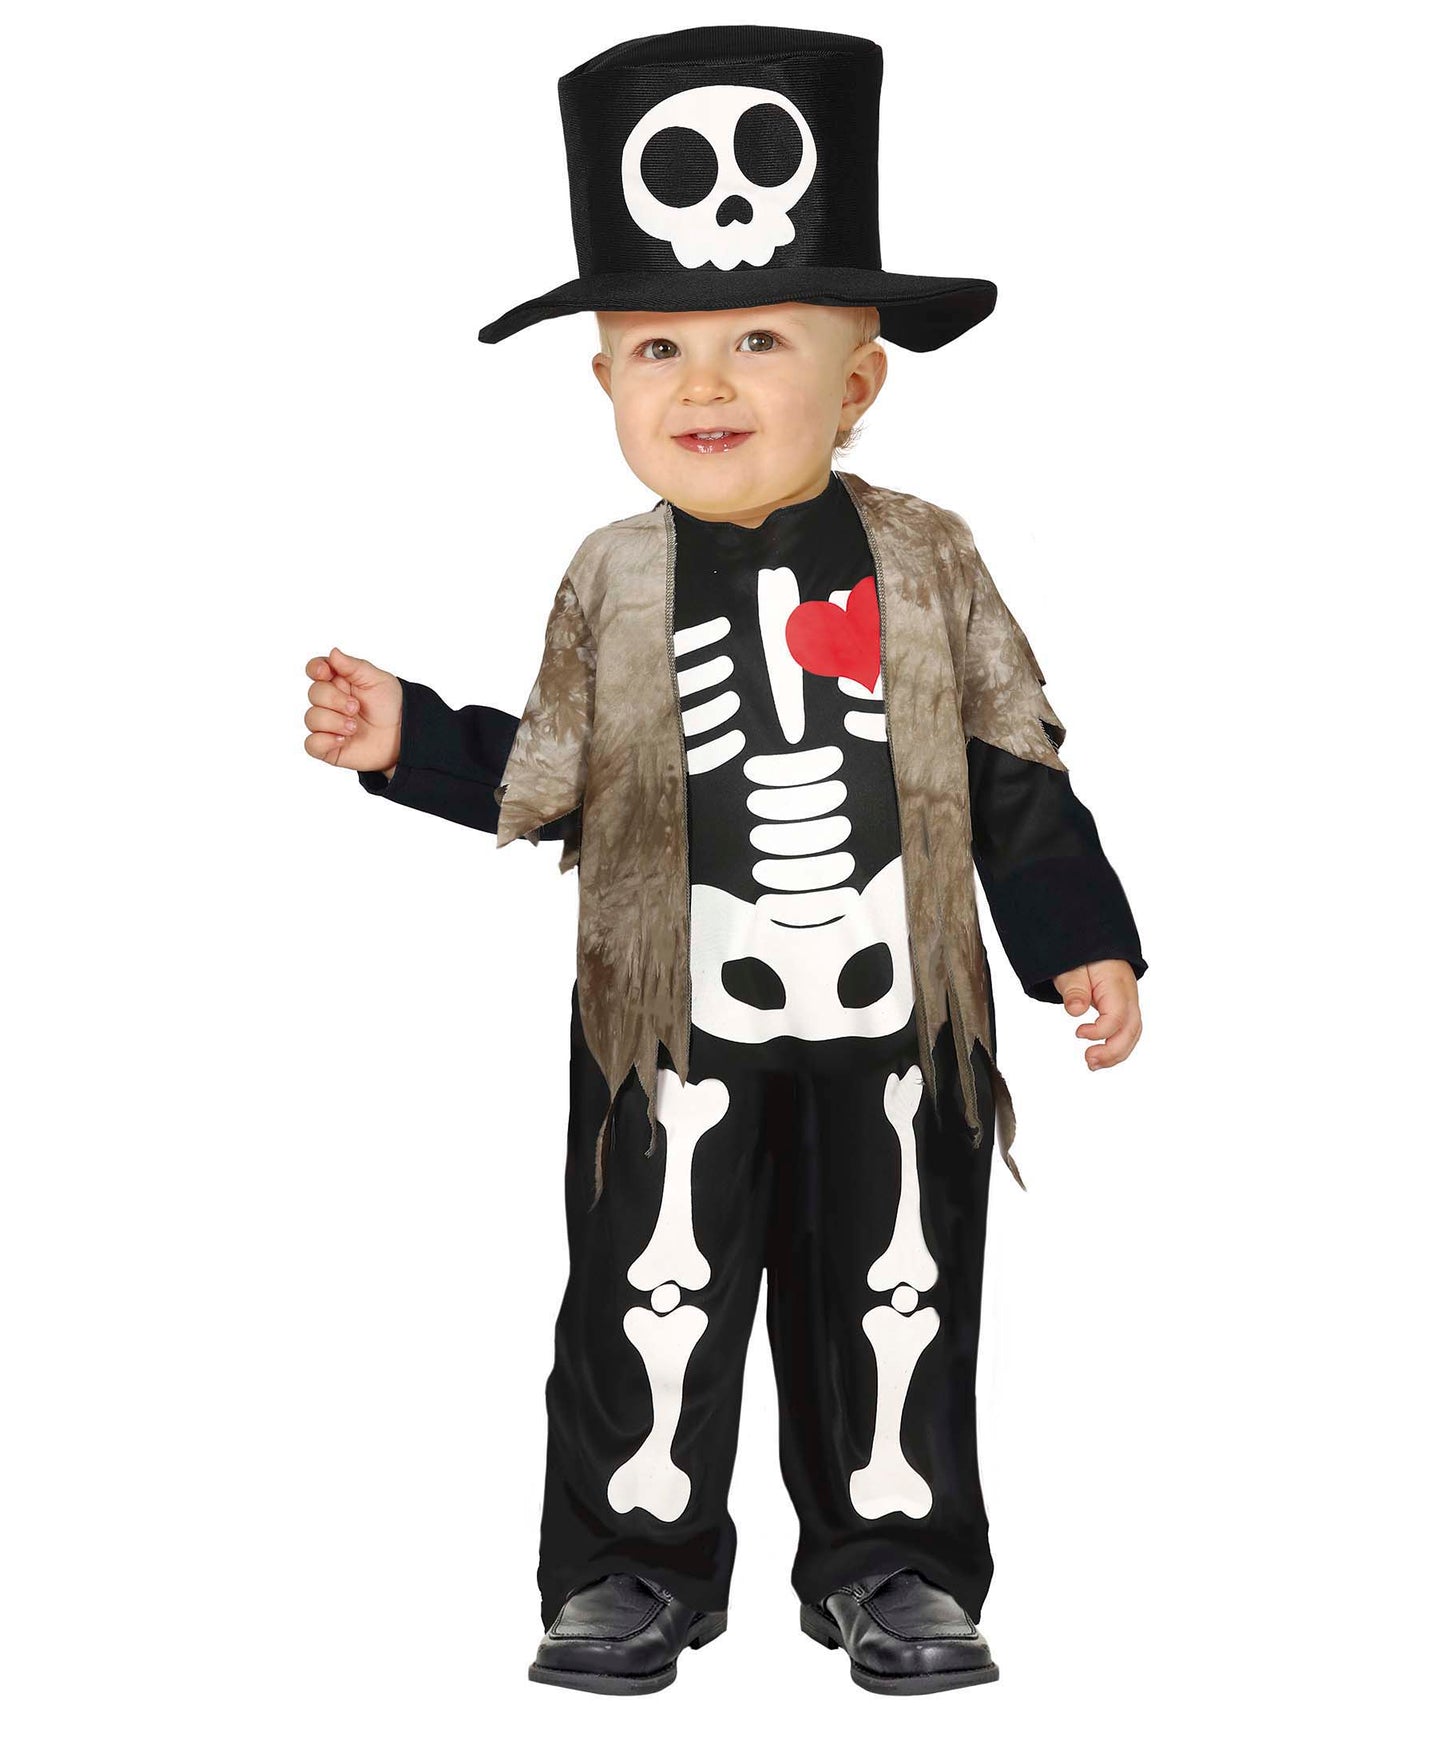 Little Skeleton Costume